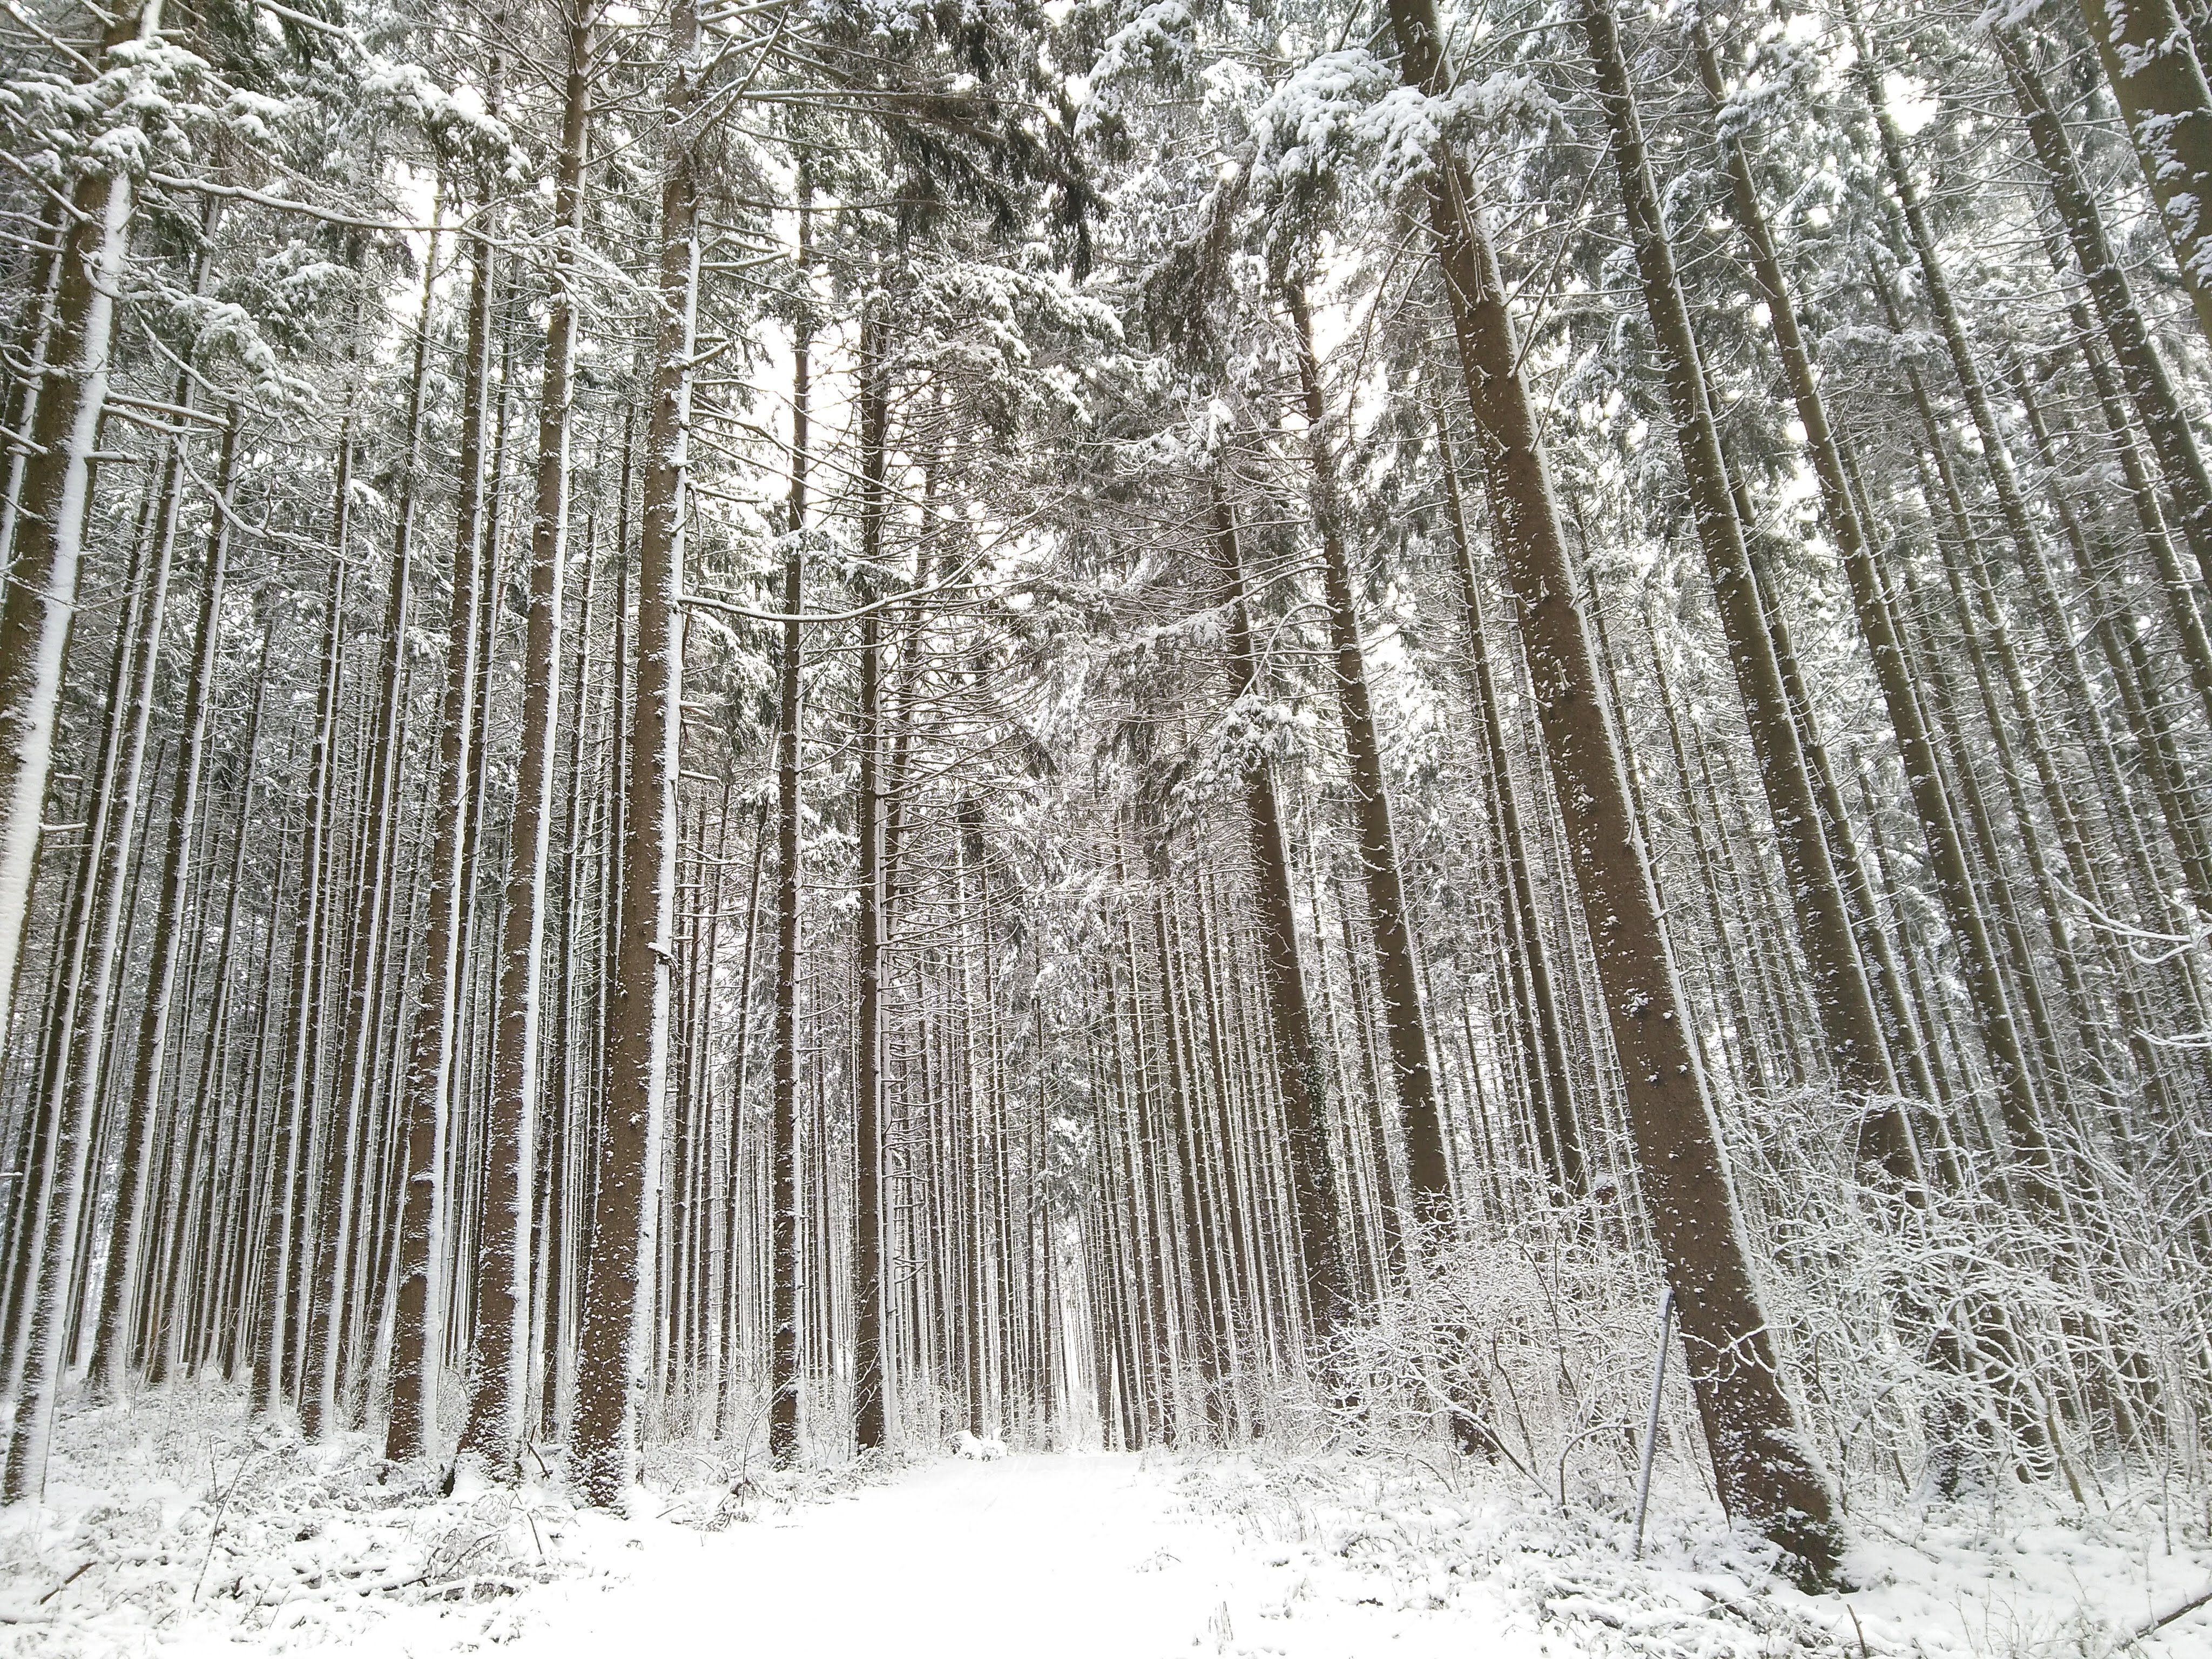  7. "Paradis d'hiver - forêt enneigée"